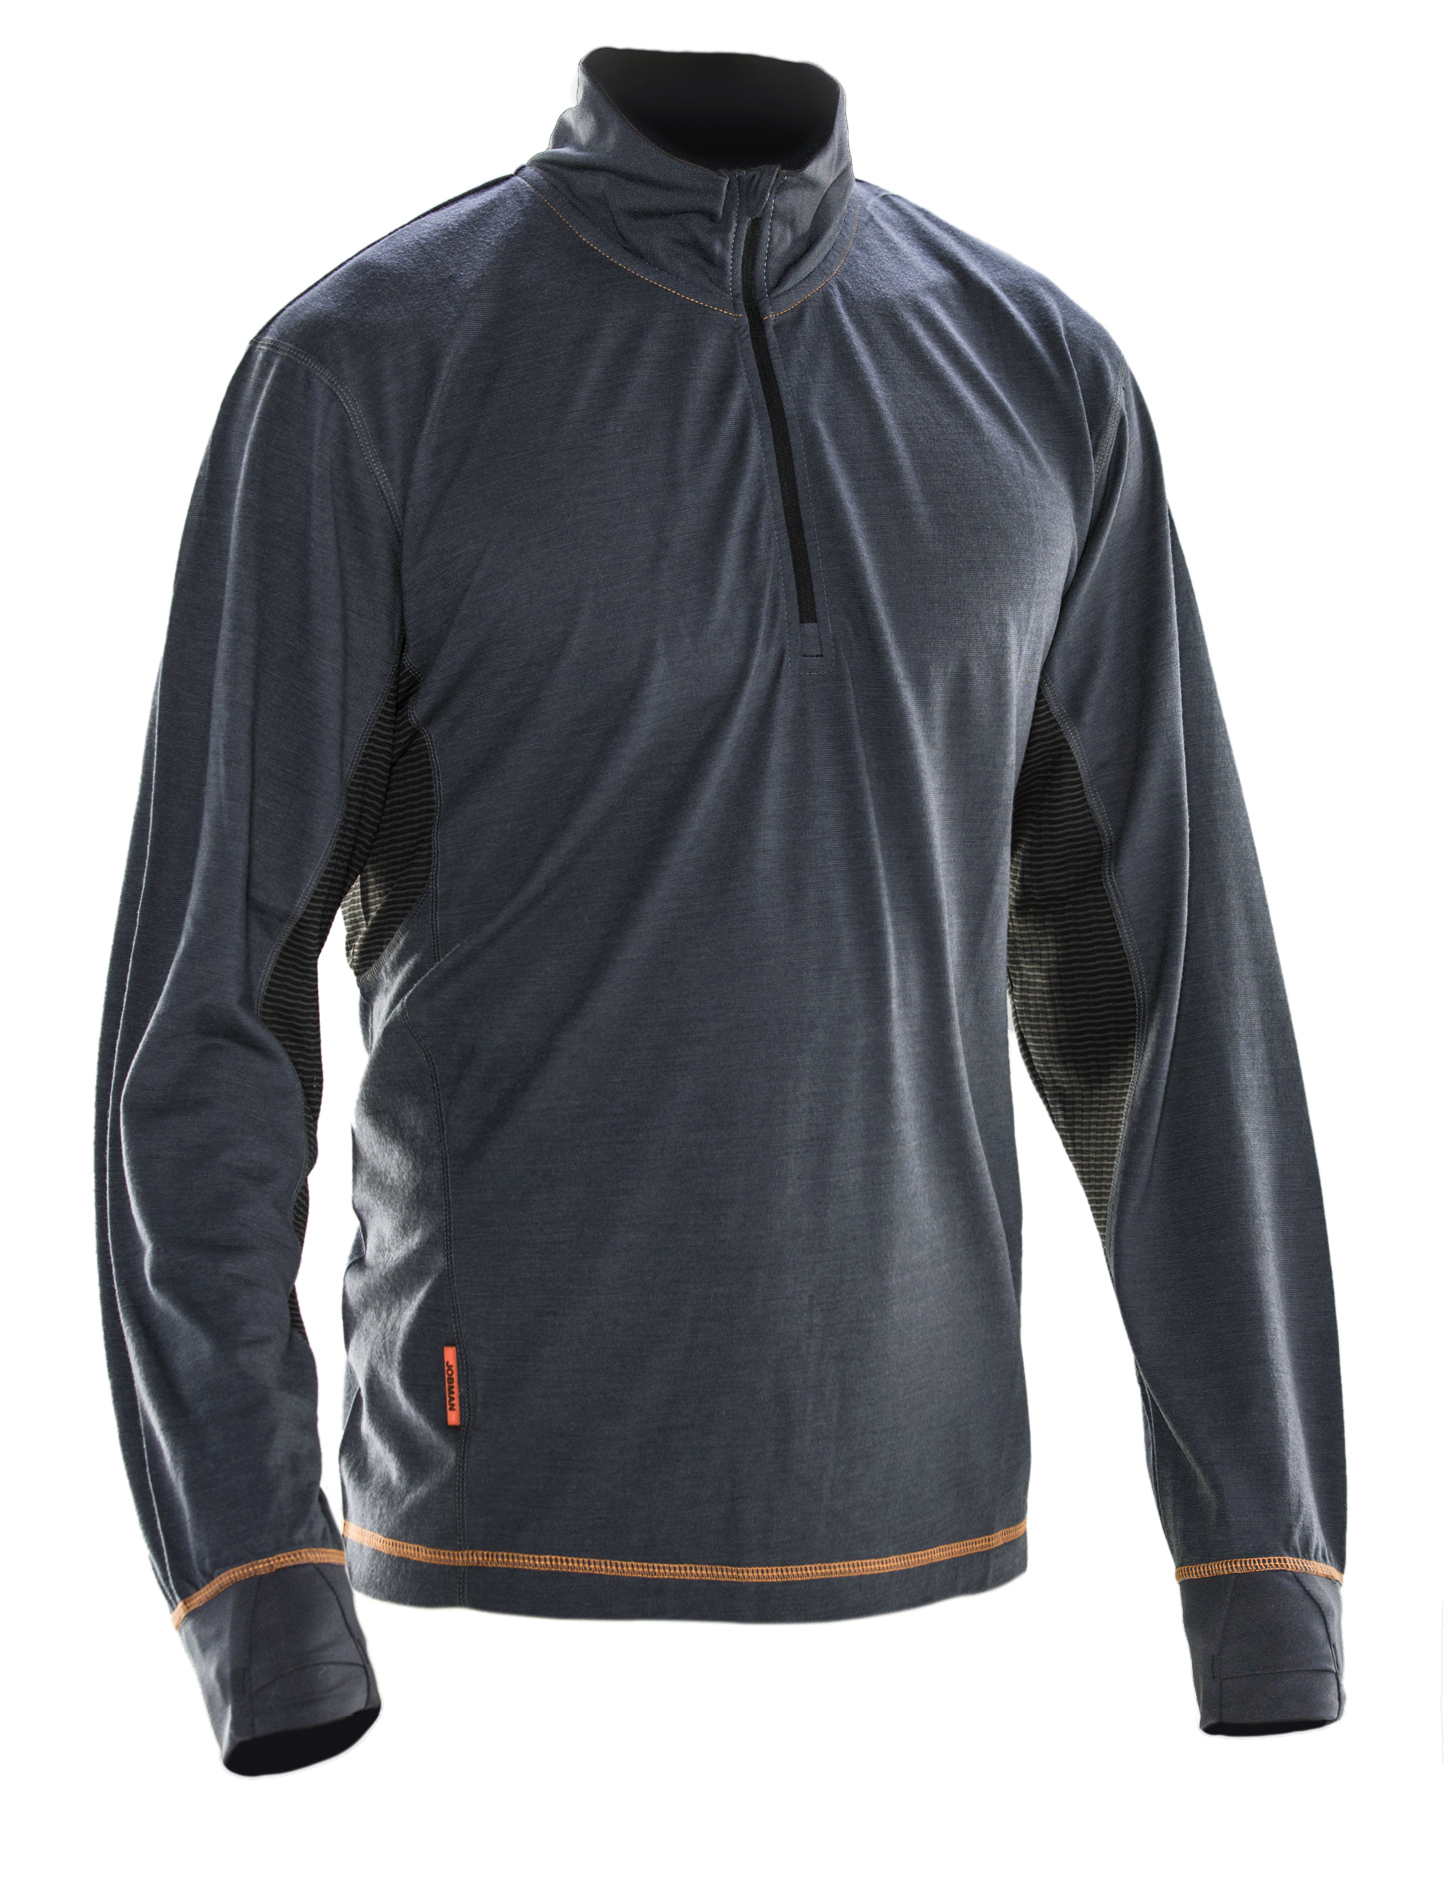 5596 Sweatshirt Dry-tech™ en laine mérinos L gris foncé/noir